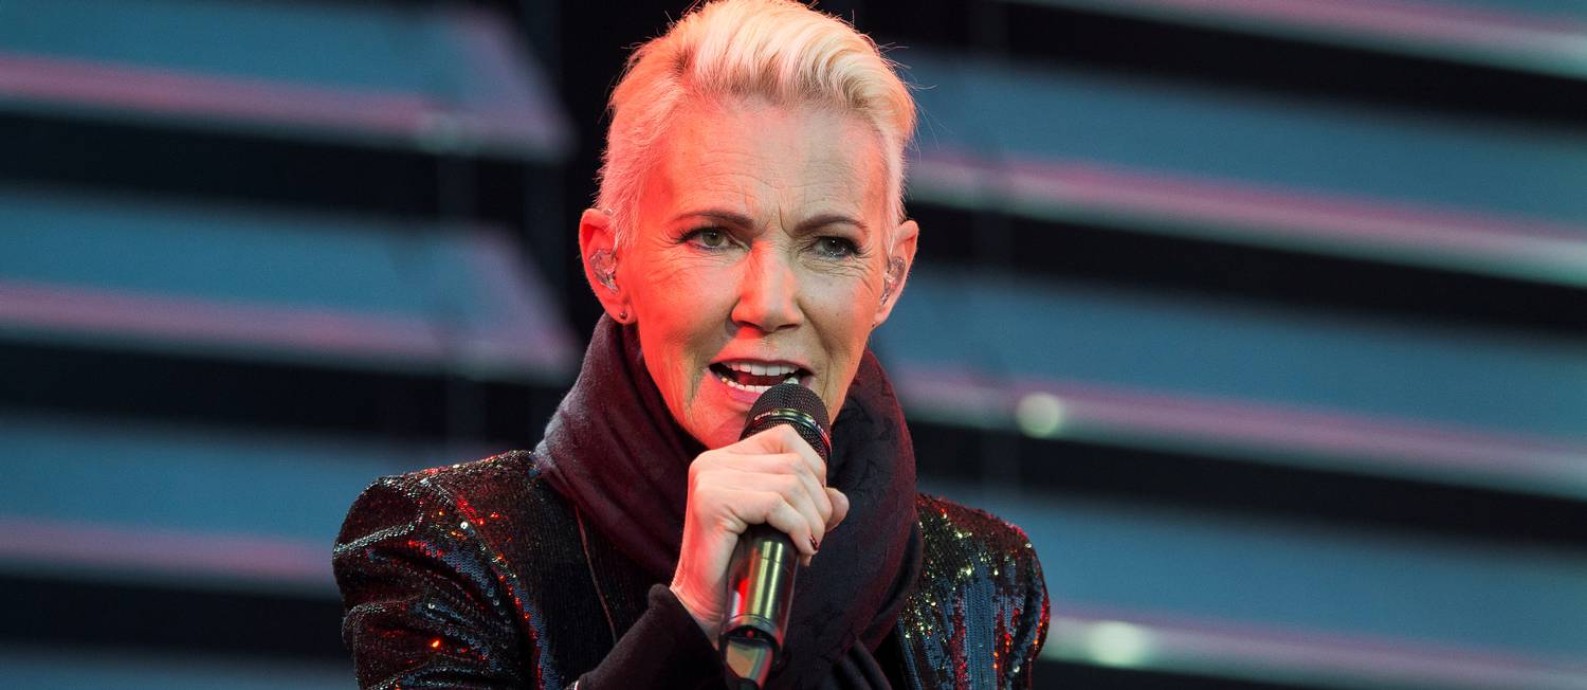 Marie Fredriksson, do Roxette,canta durante um show em Kalmar, na Suécia Foto: TT NEWS AGENCY / via REUTERS